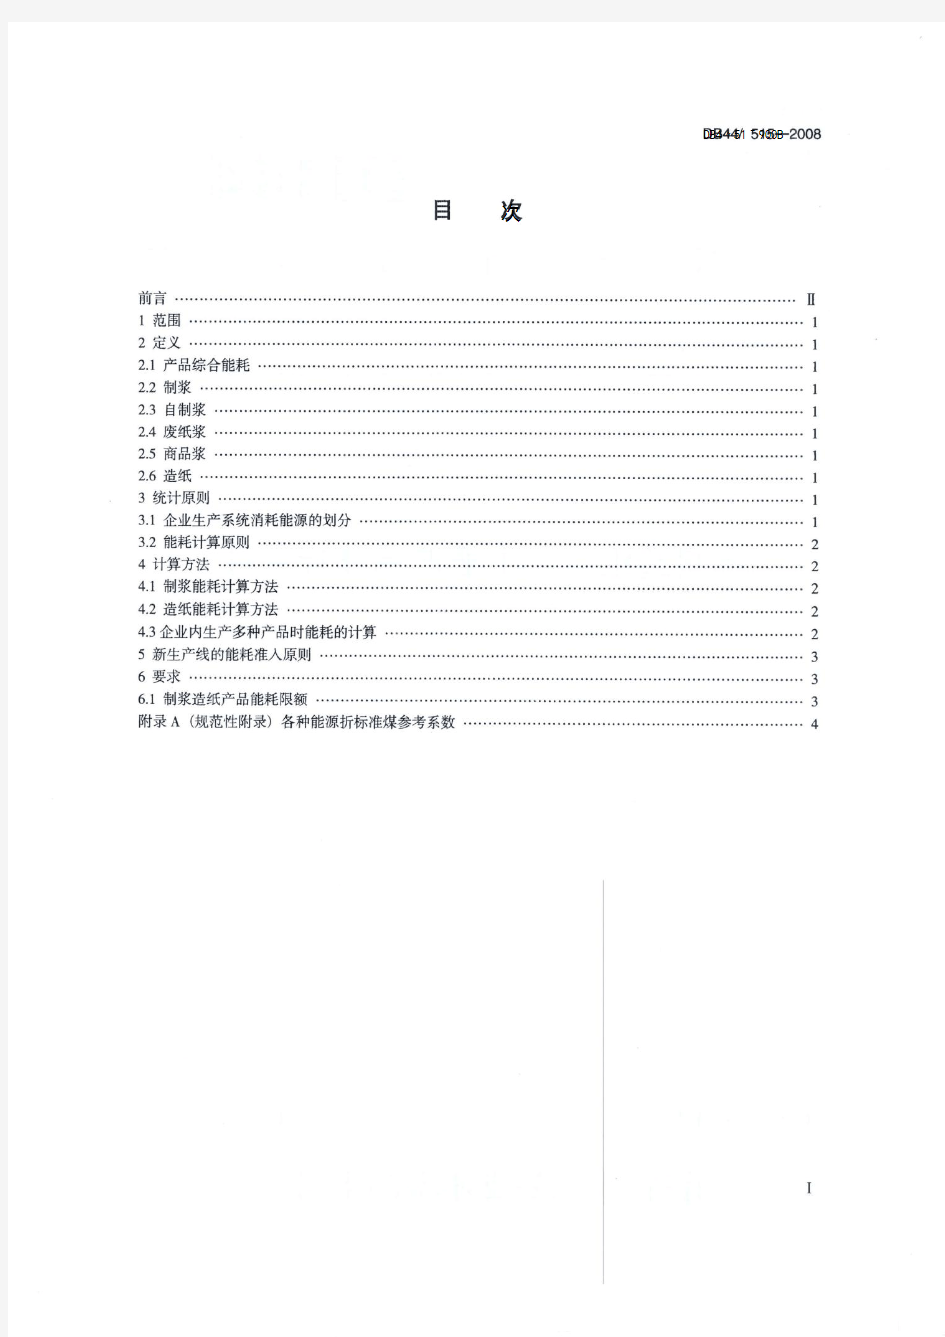 制浆造纸行业主要产品能耗限额(DB44 515-2008)